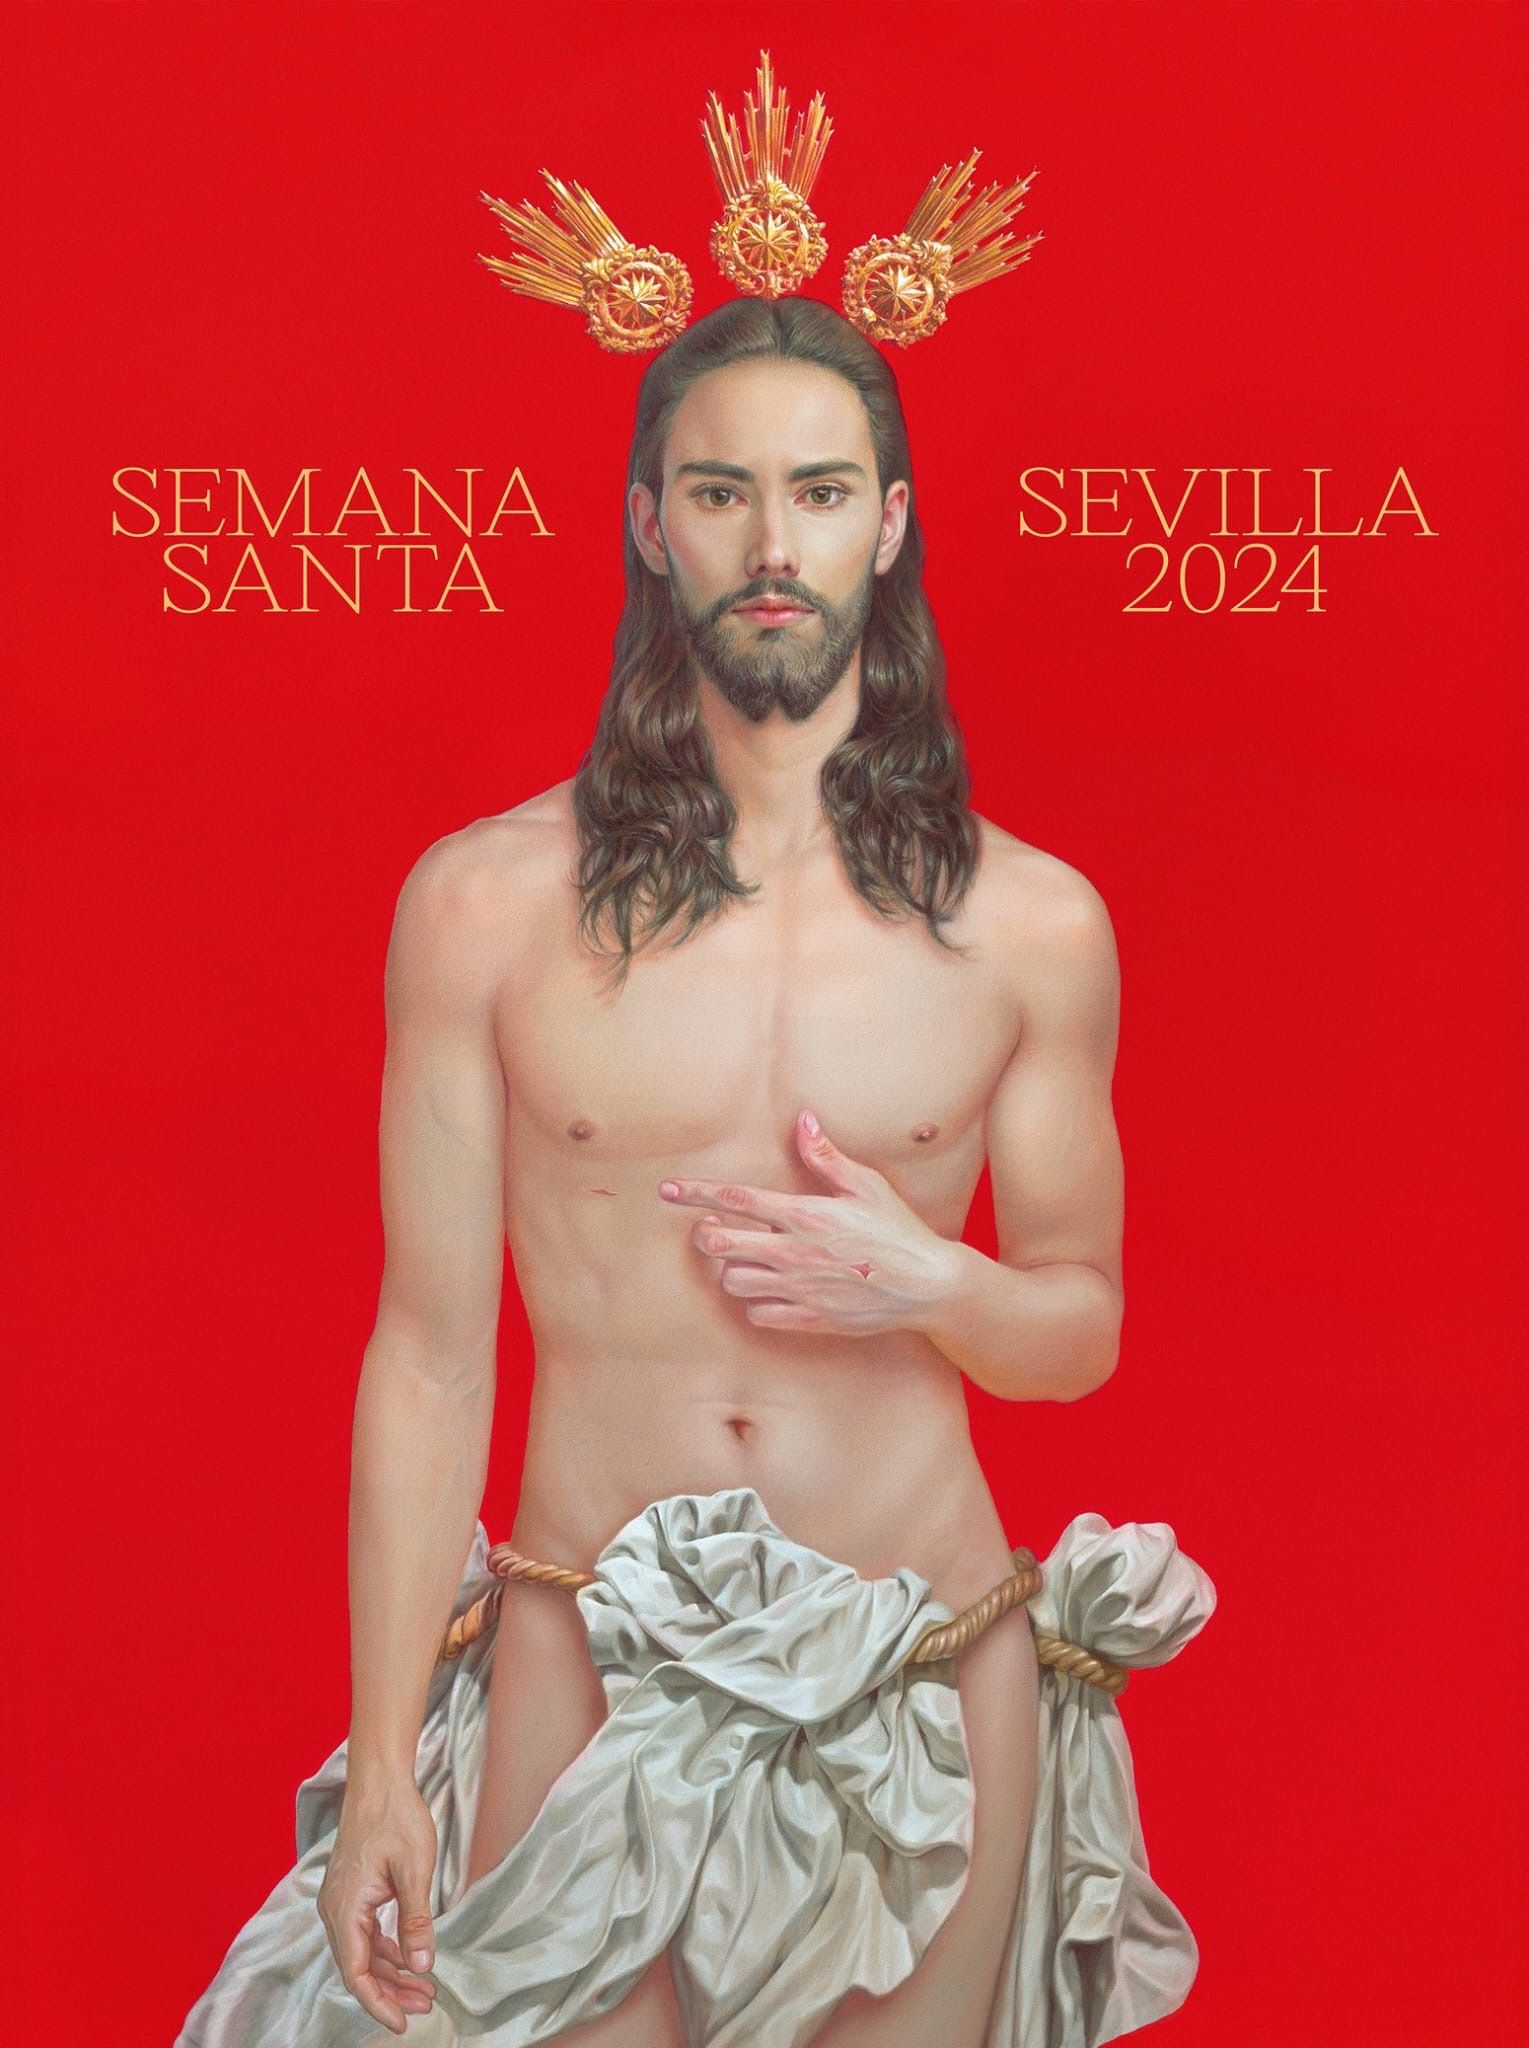 La presentación del cartel de la Semana Santa de Sevilla 2024, en imágenes